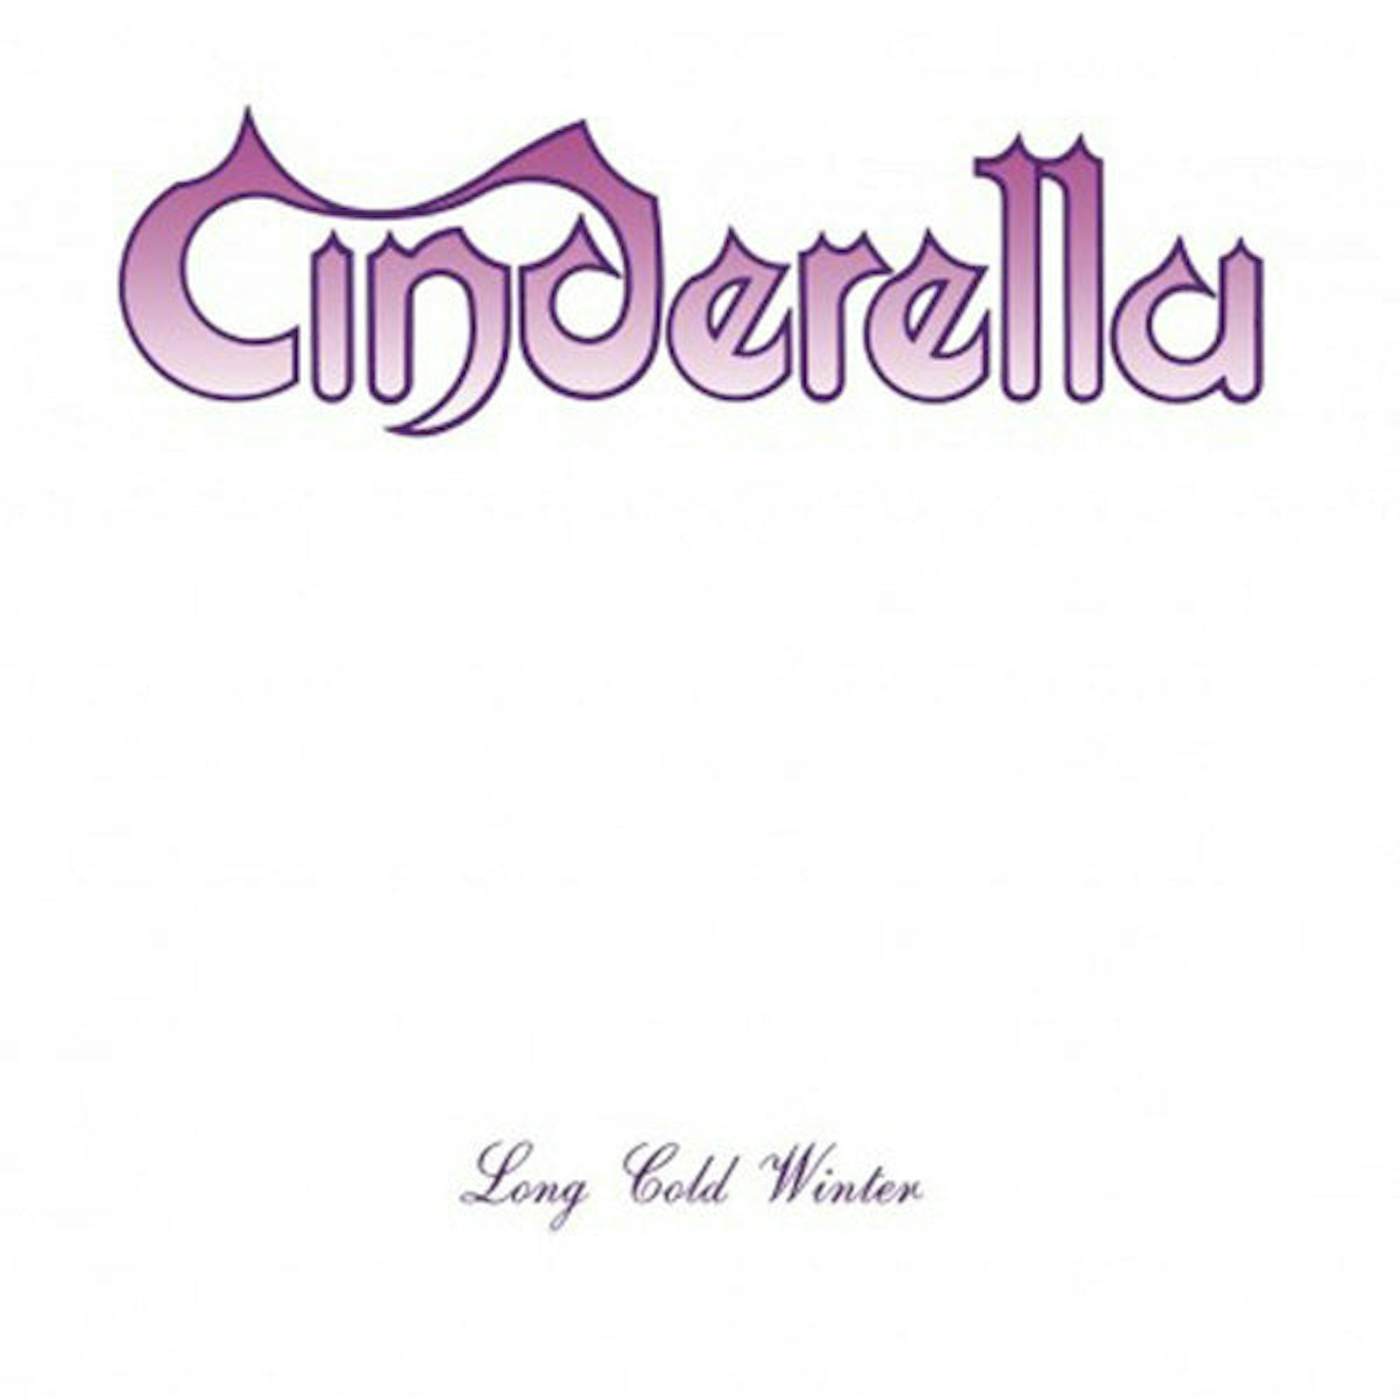  Cinderella LP - Long Cold Winter (Vinyl)